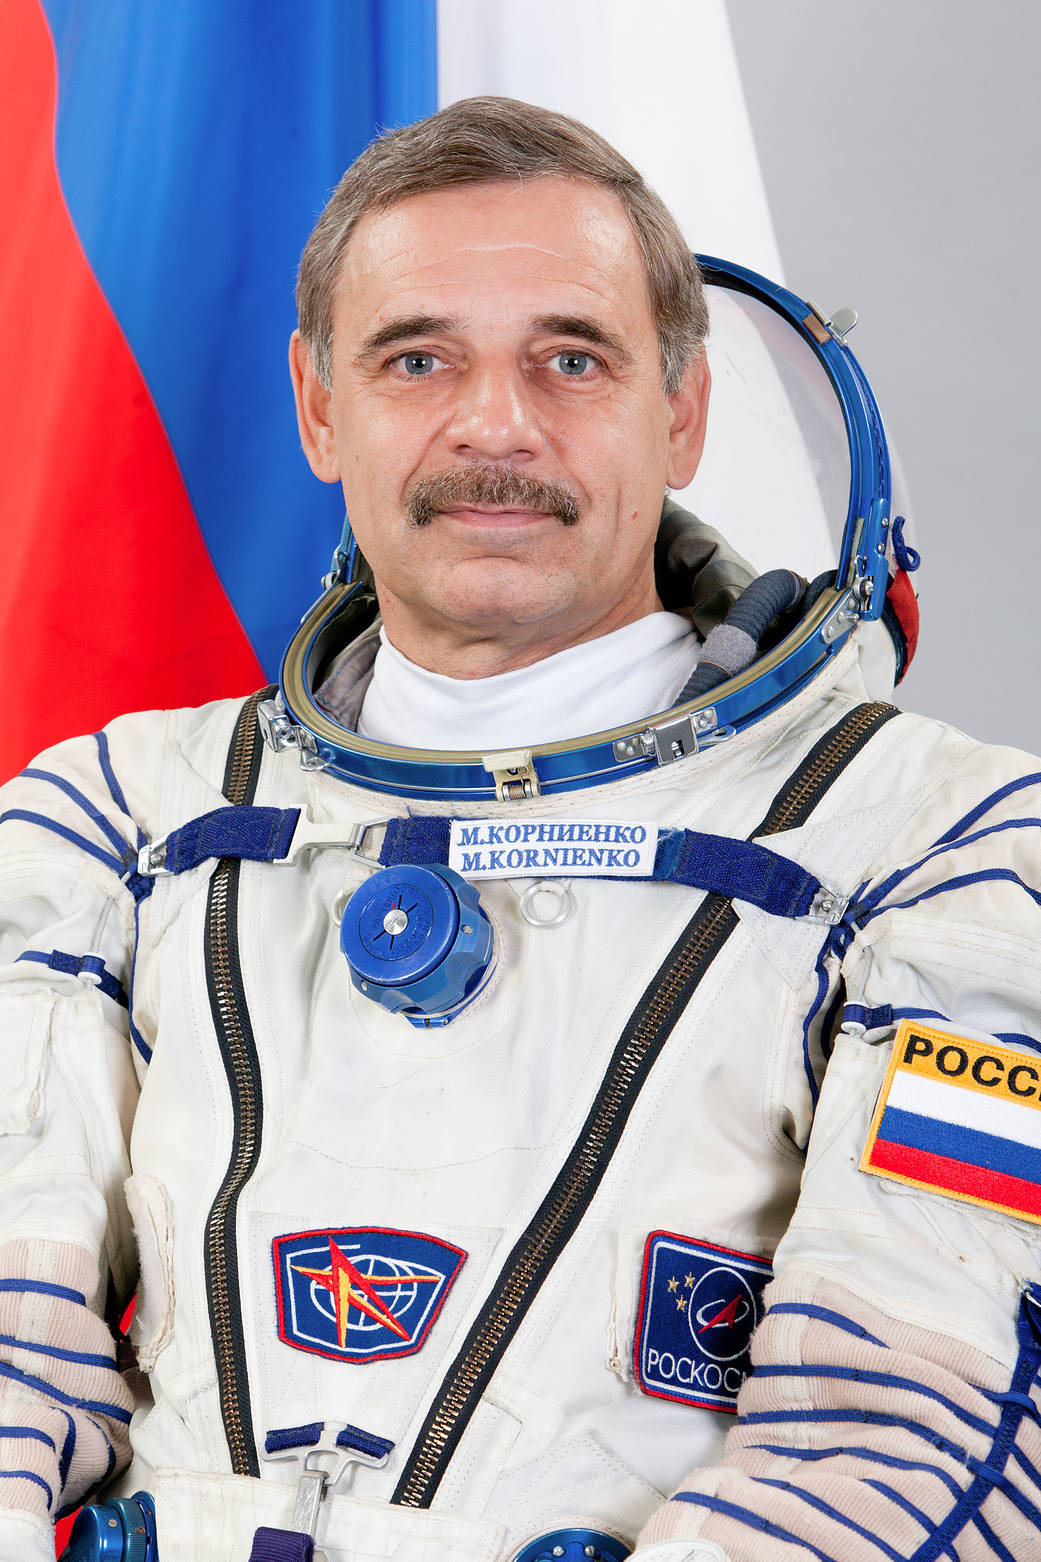 Russian Cosmonaut Mikhail Kornienko